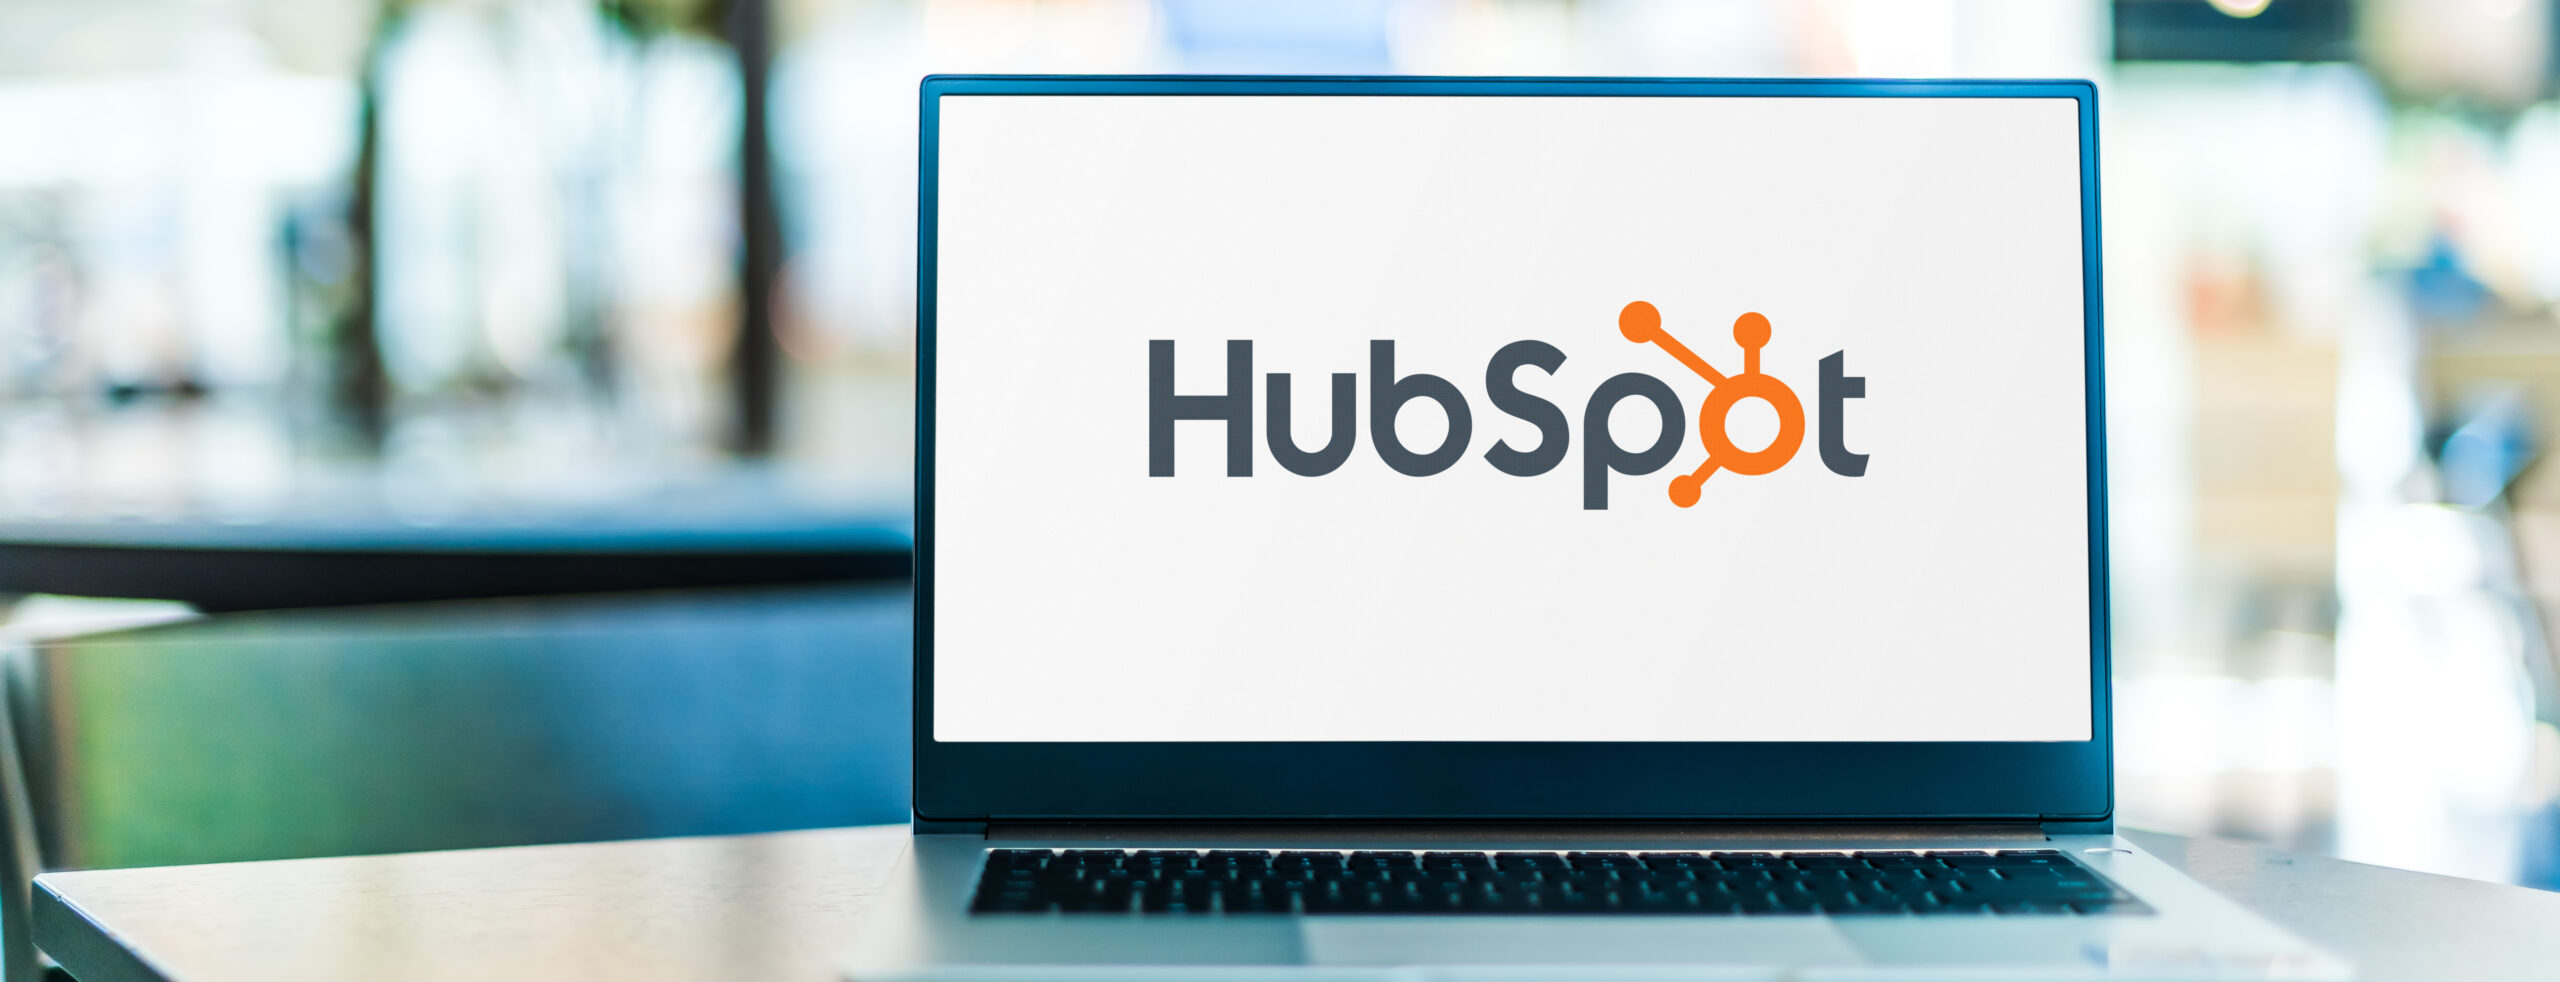 Digitaal ondertekenen met HubSpot. Een slimme integratie tussen HubSpot en PKIsigning